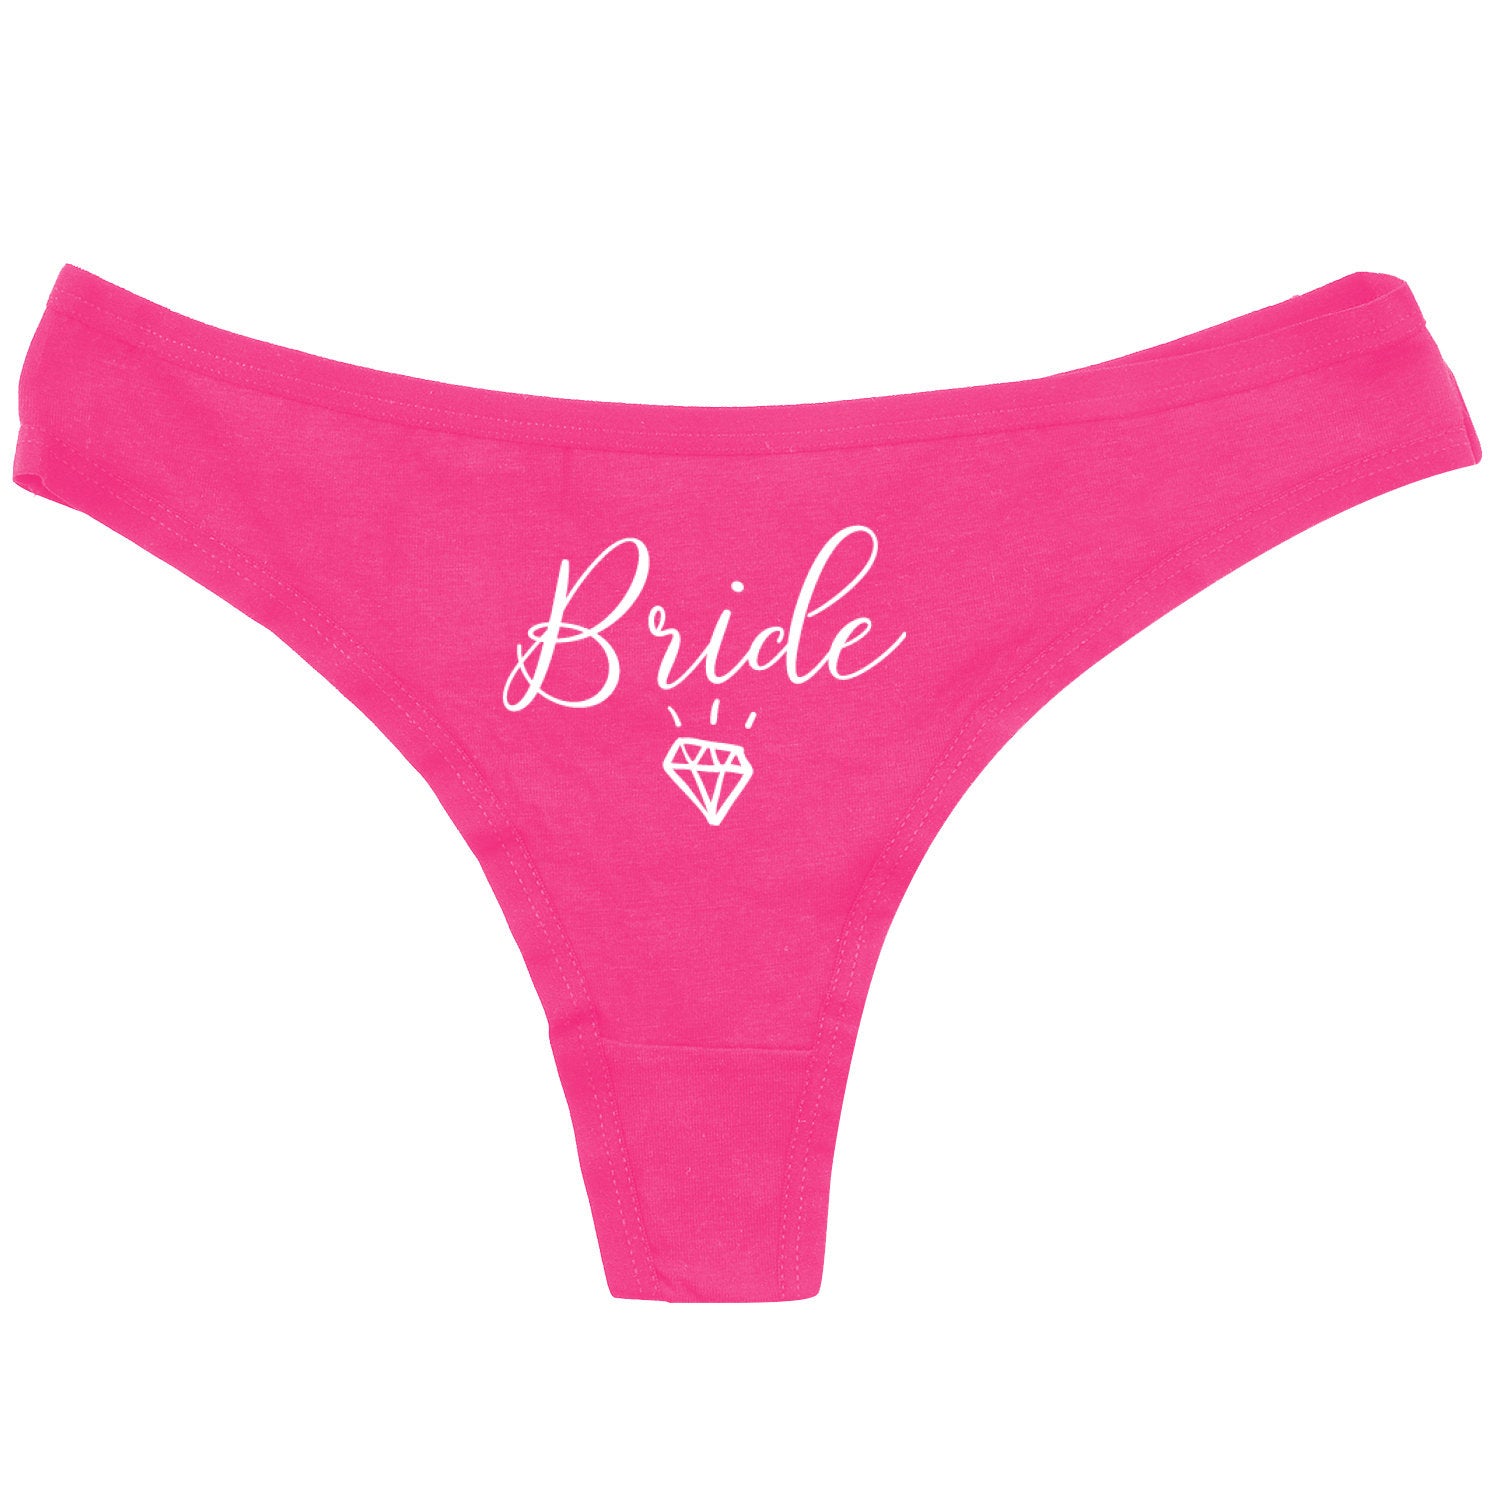 Brown E. reccomend Funny underwear for brides